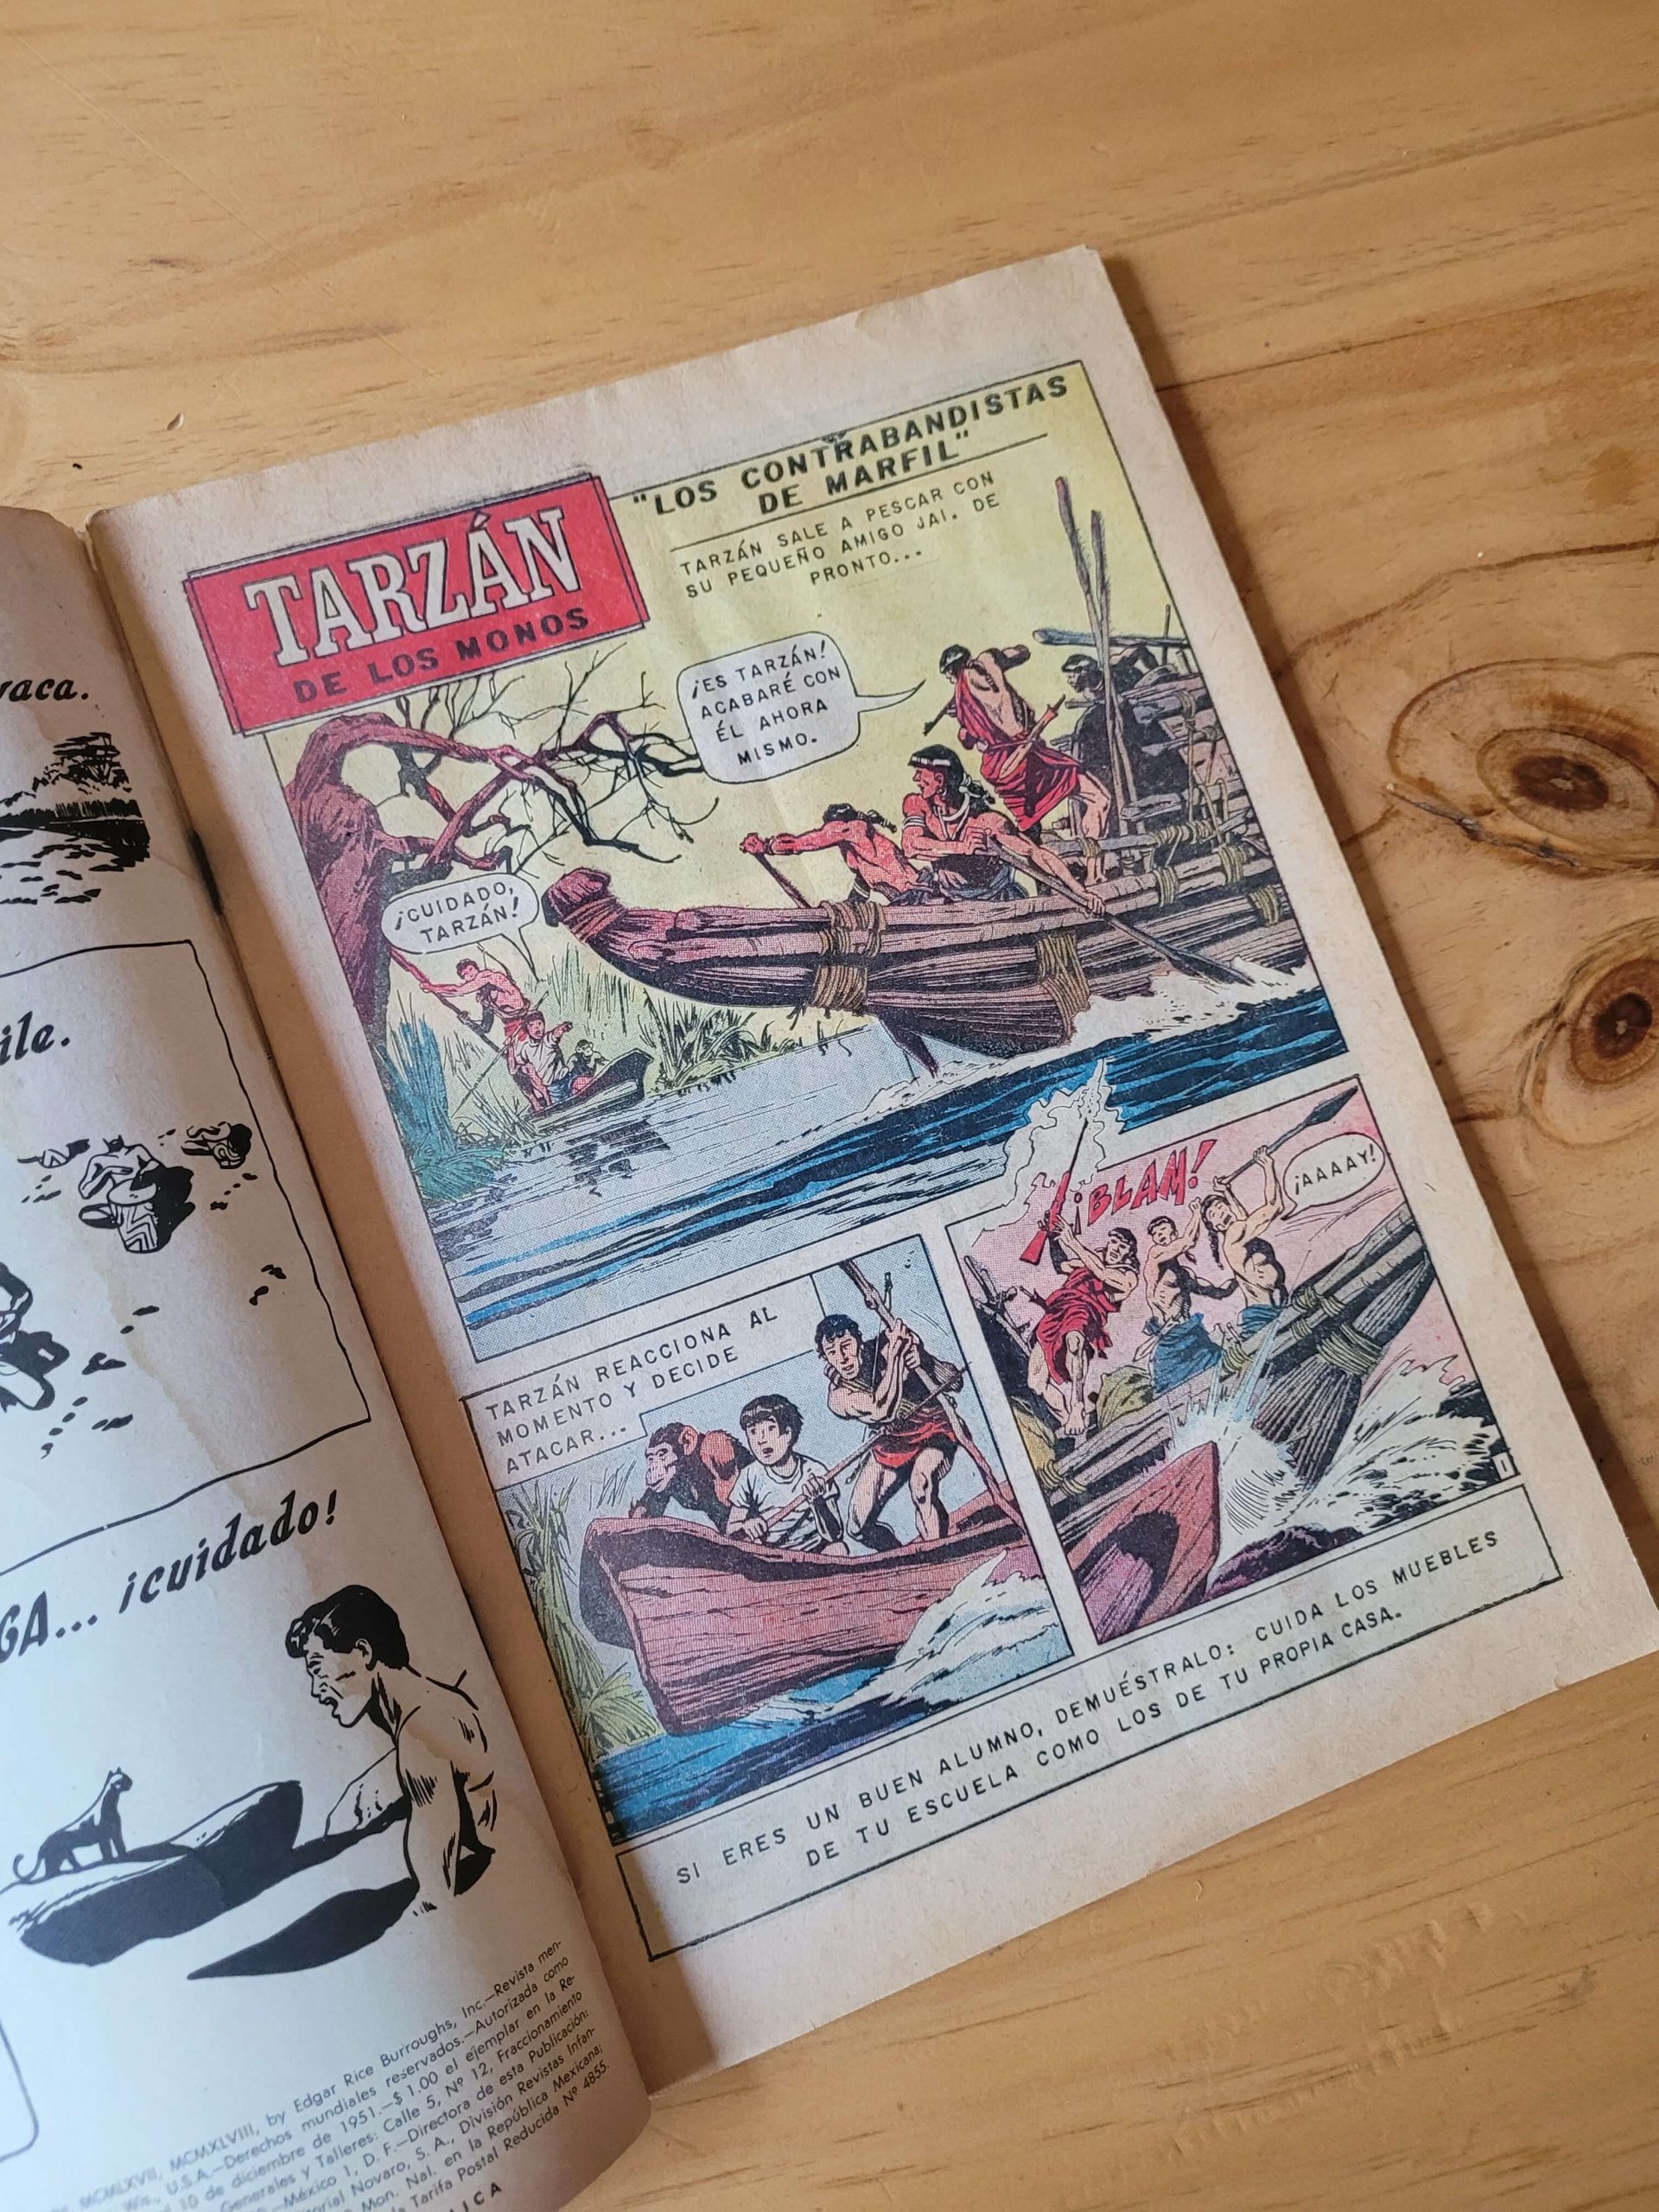 (1968) Revista TARZAN de los monos